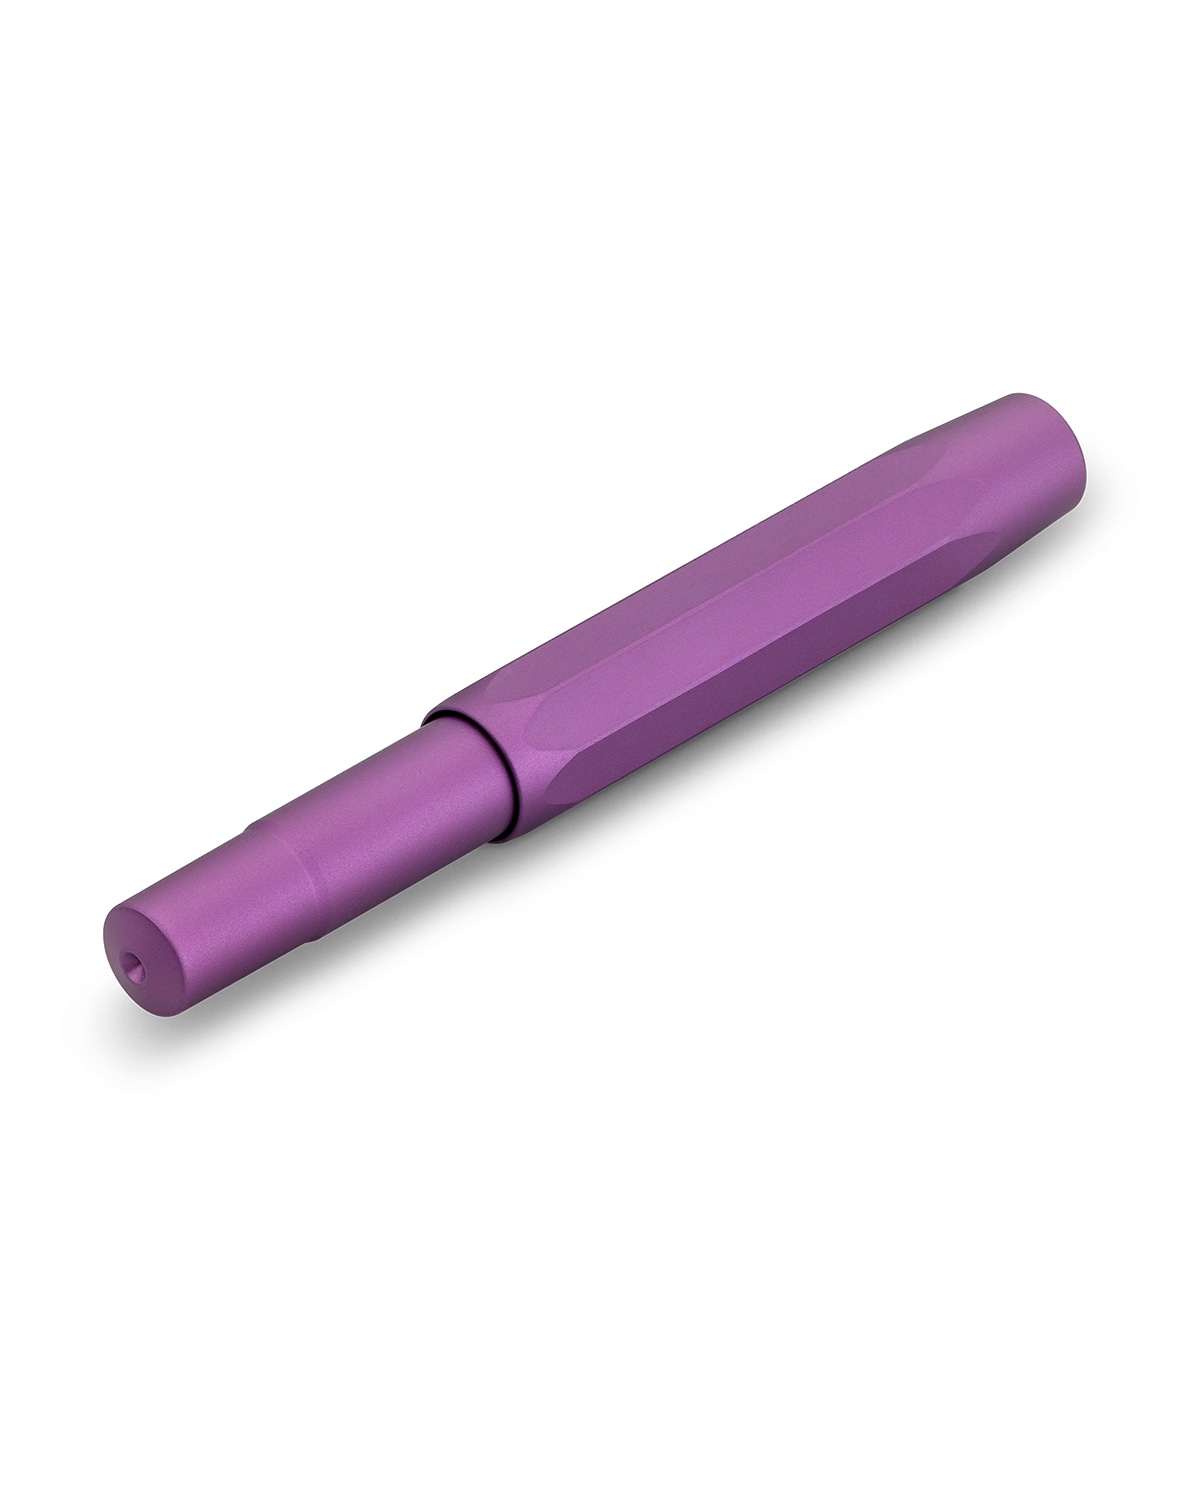 Ручка перьевая KAWECO Collection Яркий фиолетовый 4 варианта пера